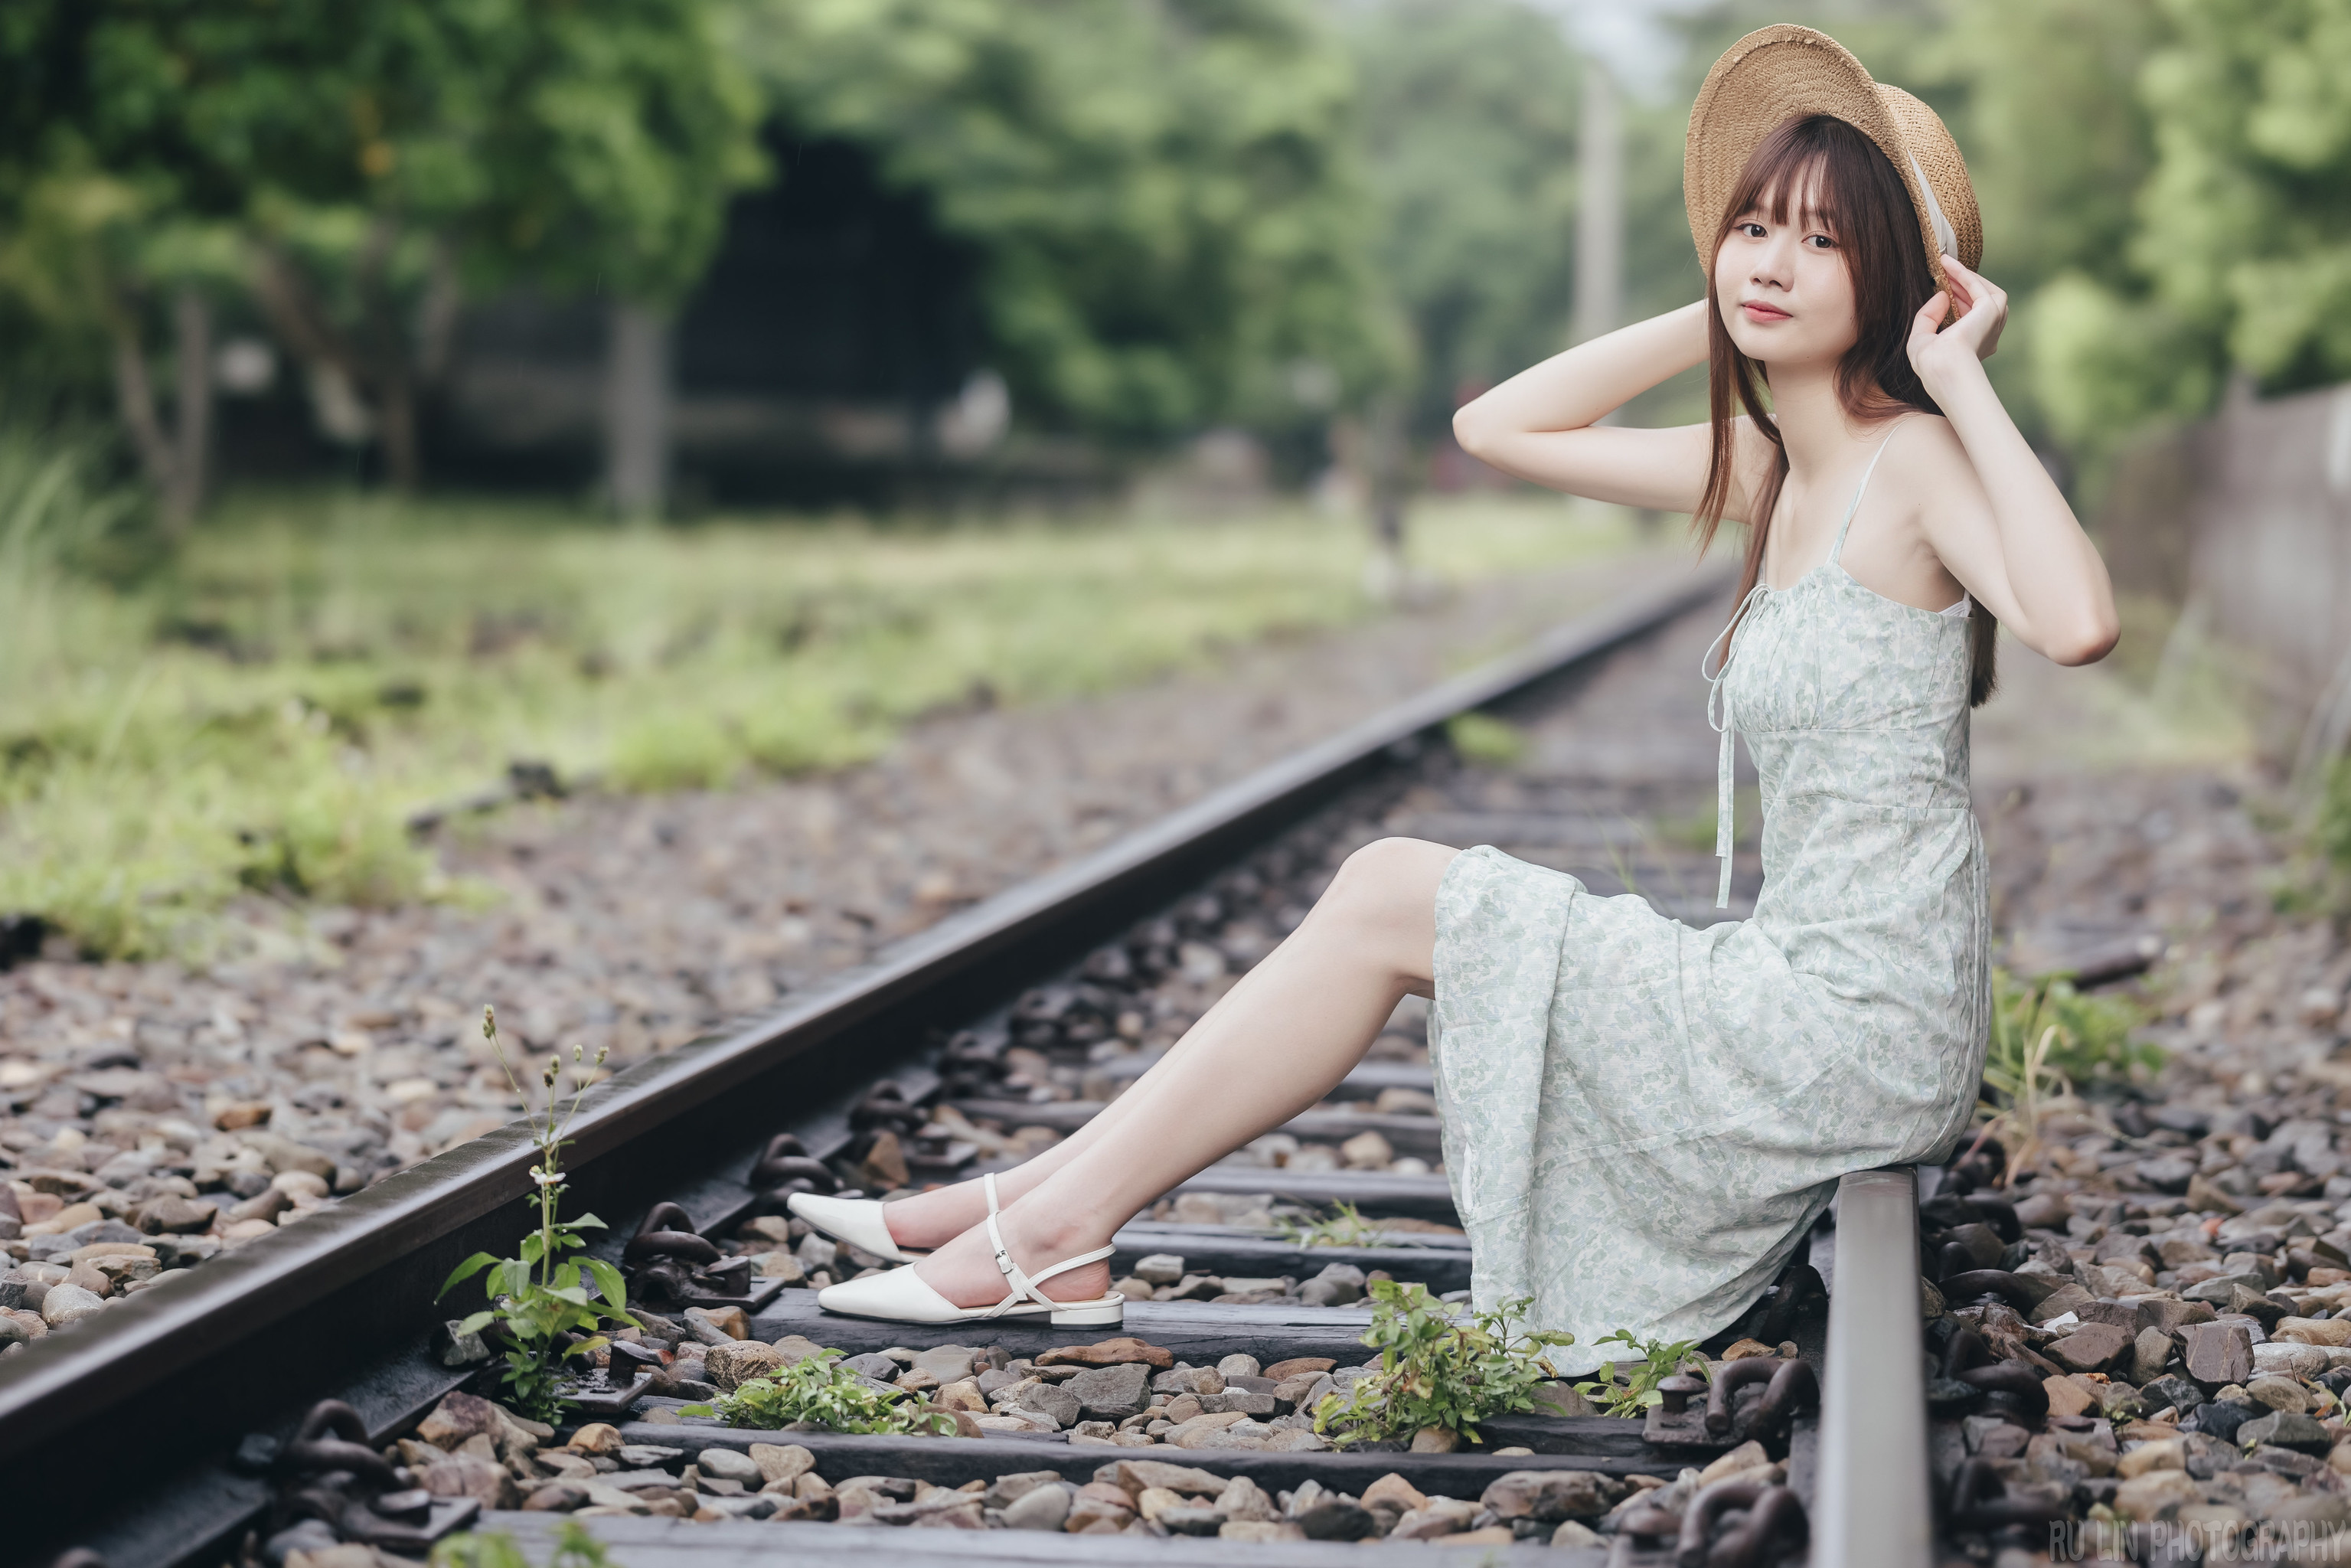 Ru Lin Women Asian Hat Dress Railway 3071x2048